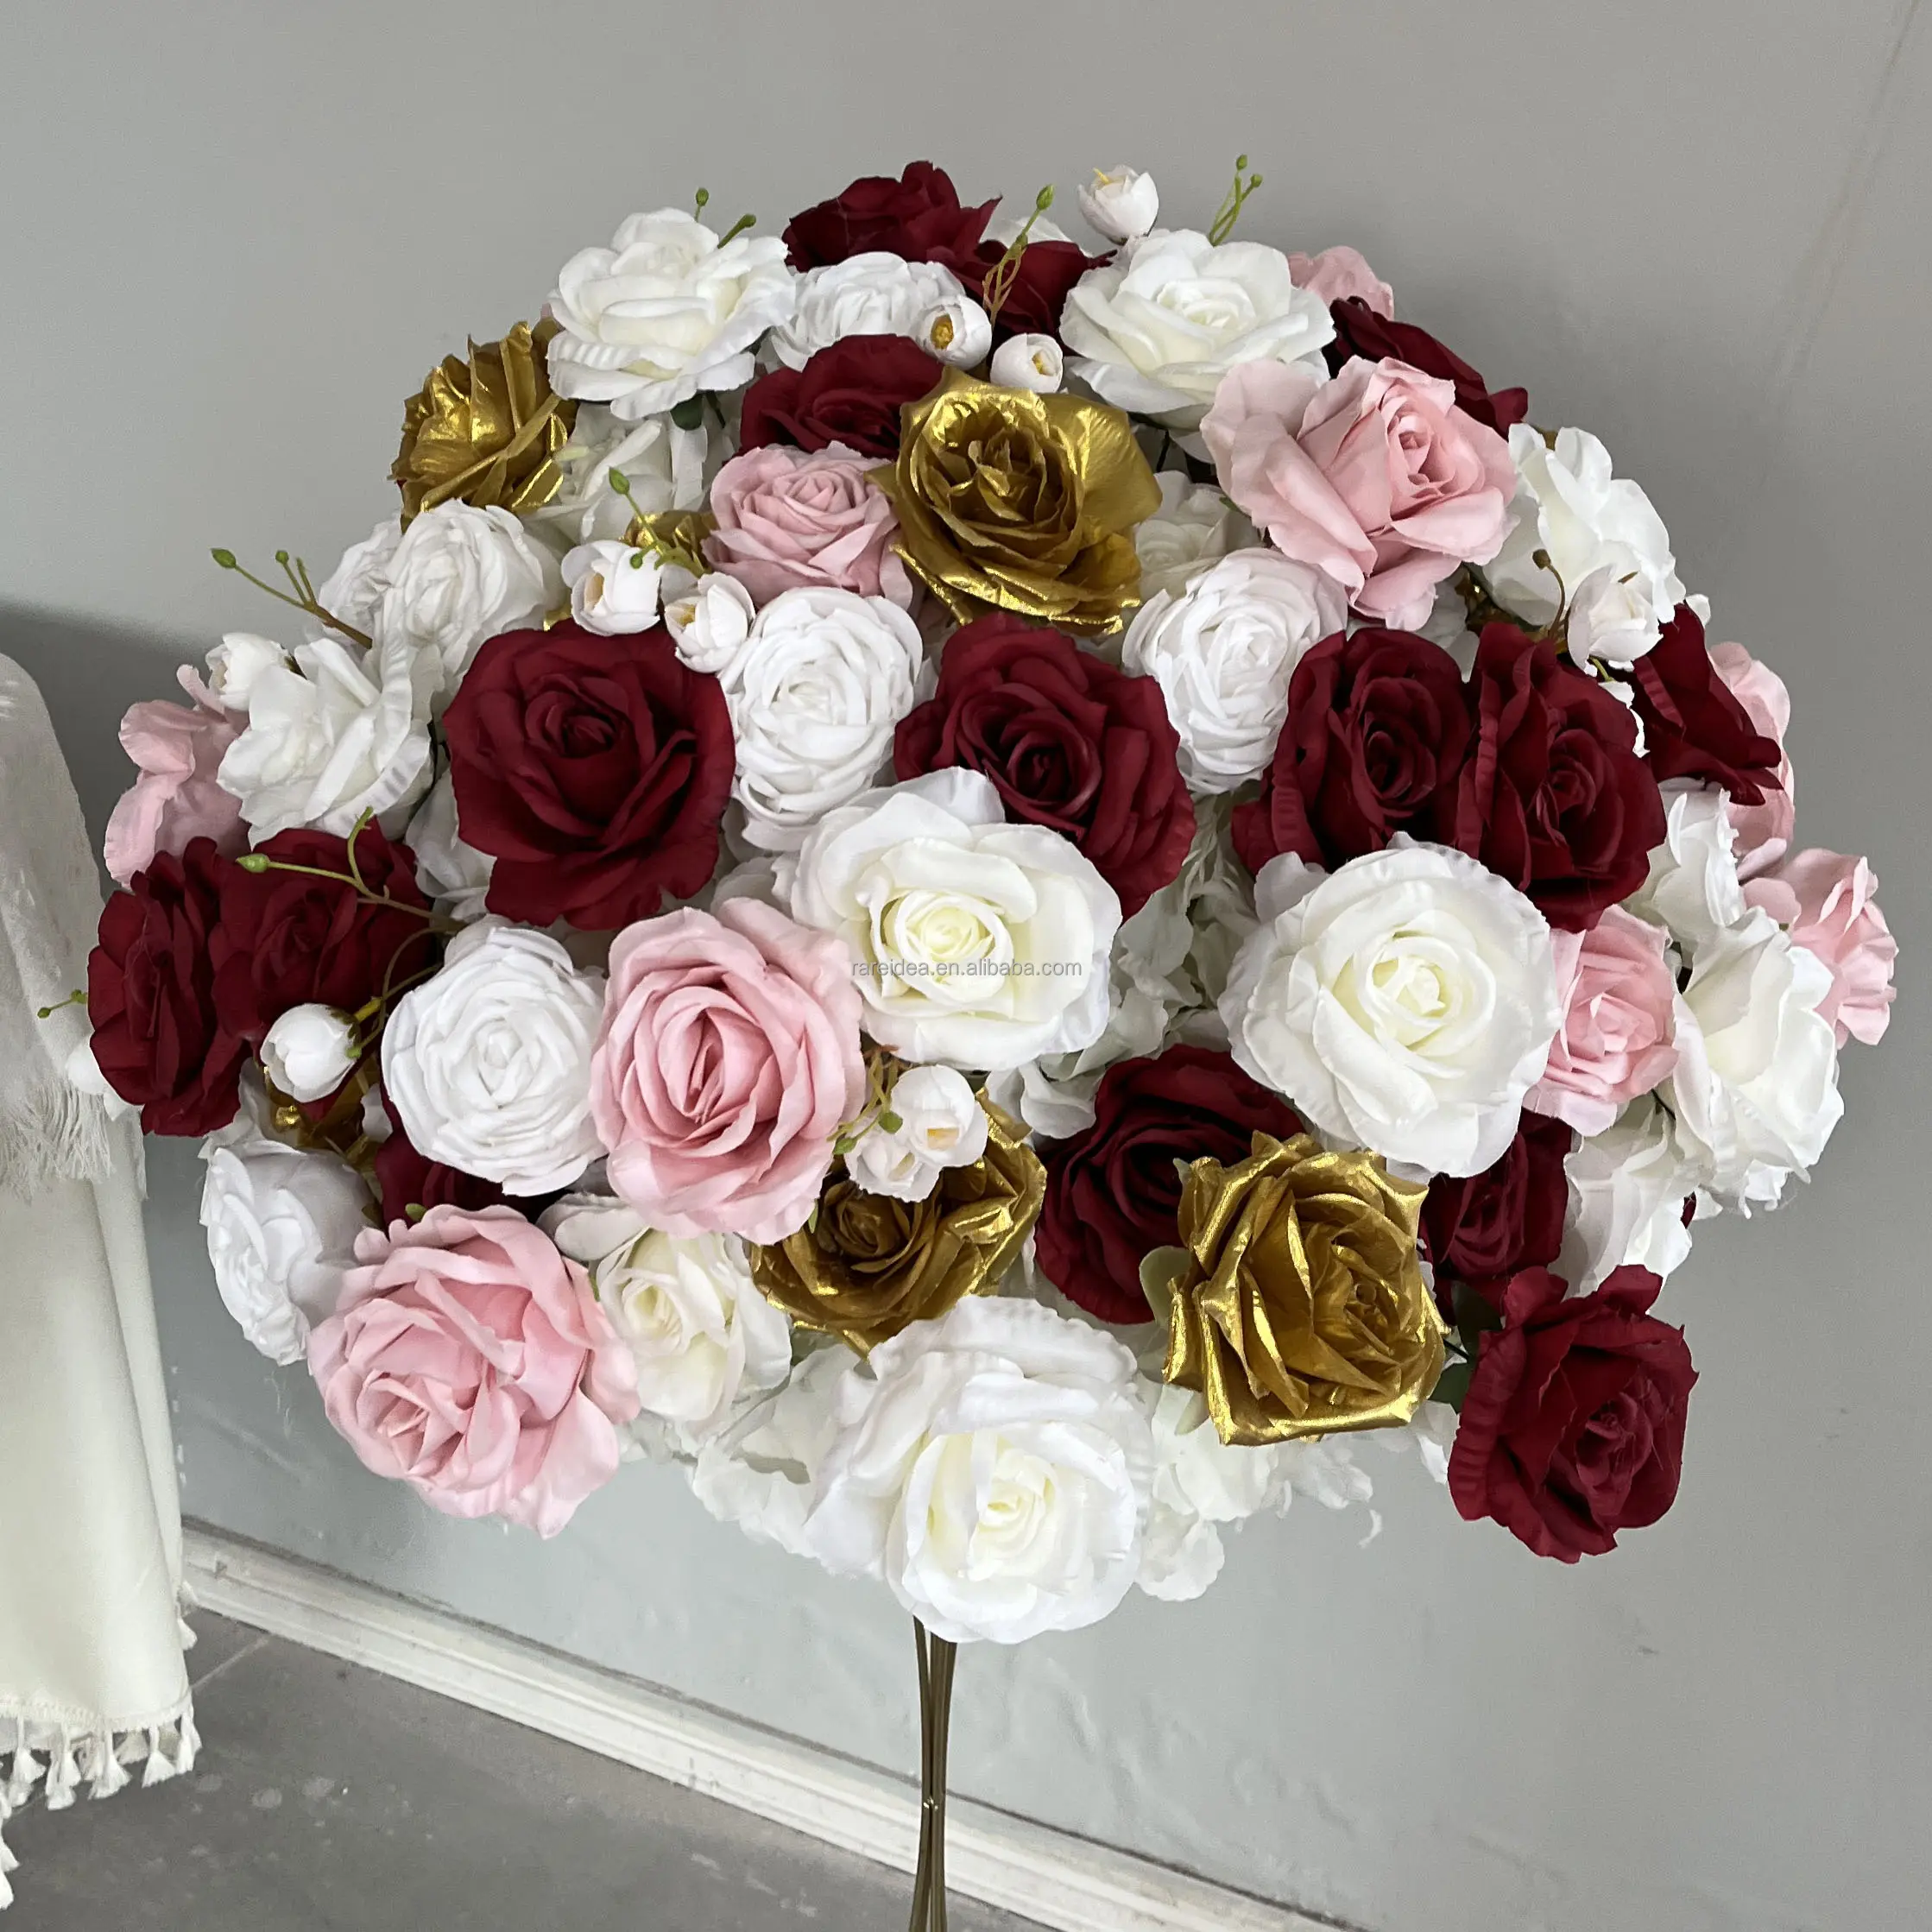 زهور اصطناعية لتزيين حفلات الزفاف تتميز بأنها وردية بيضاء وذهبية ومكونة من قطع مركزية مستلزمات حفلات الزفاف